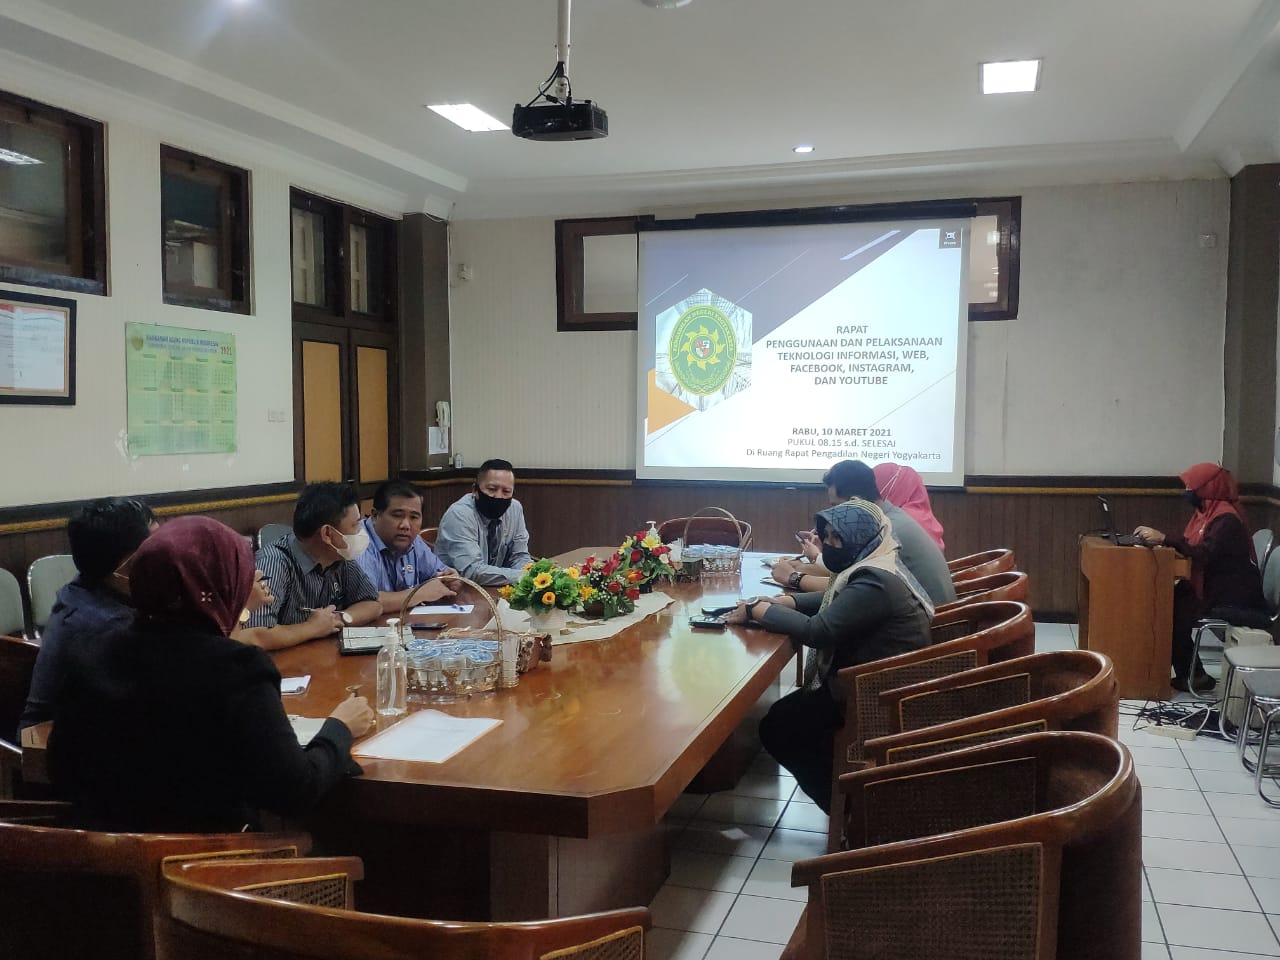 Rapat Penggunaan dan Pelaksanaan Teknologi Informasi, Website dan Media Sosial Pengadilan Negeri Yogyakarta